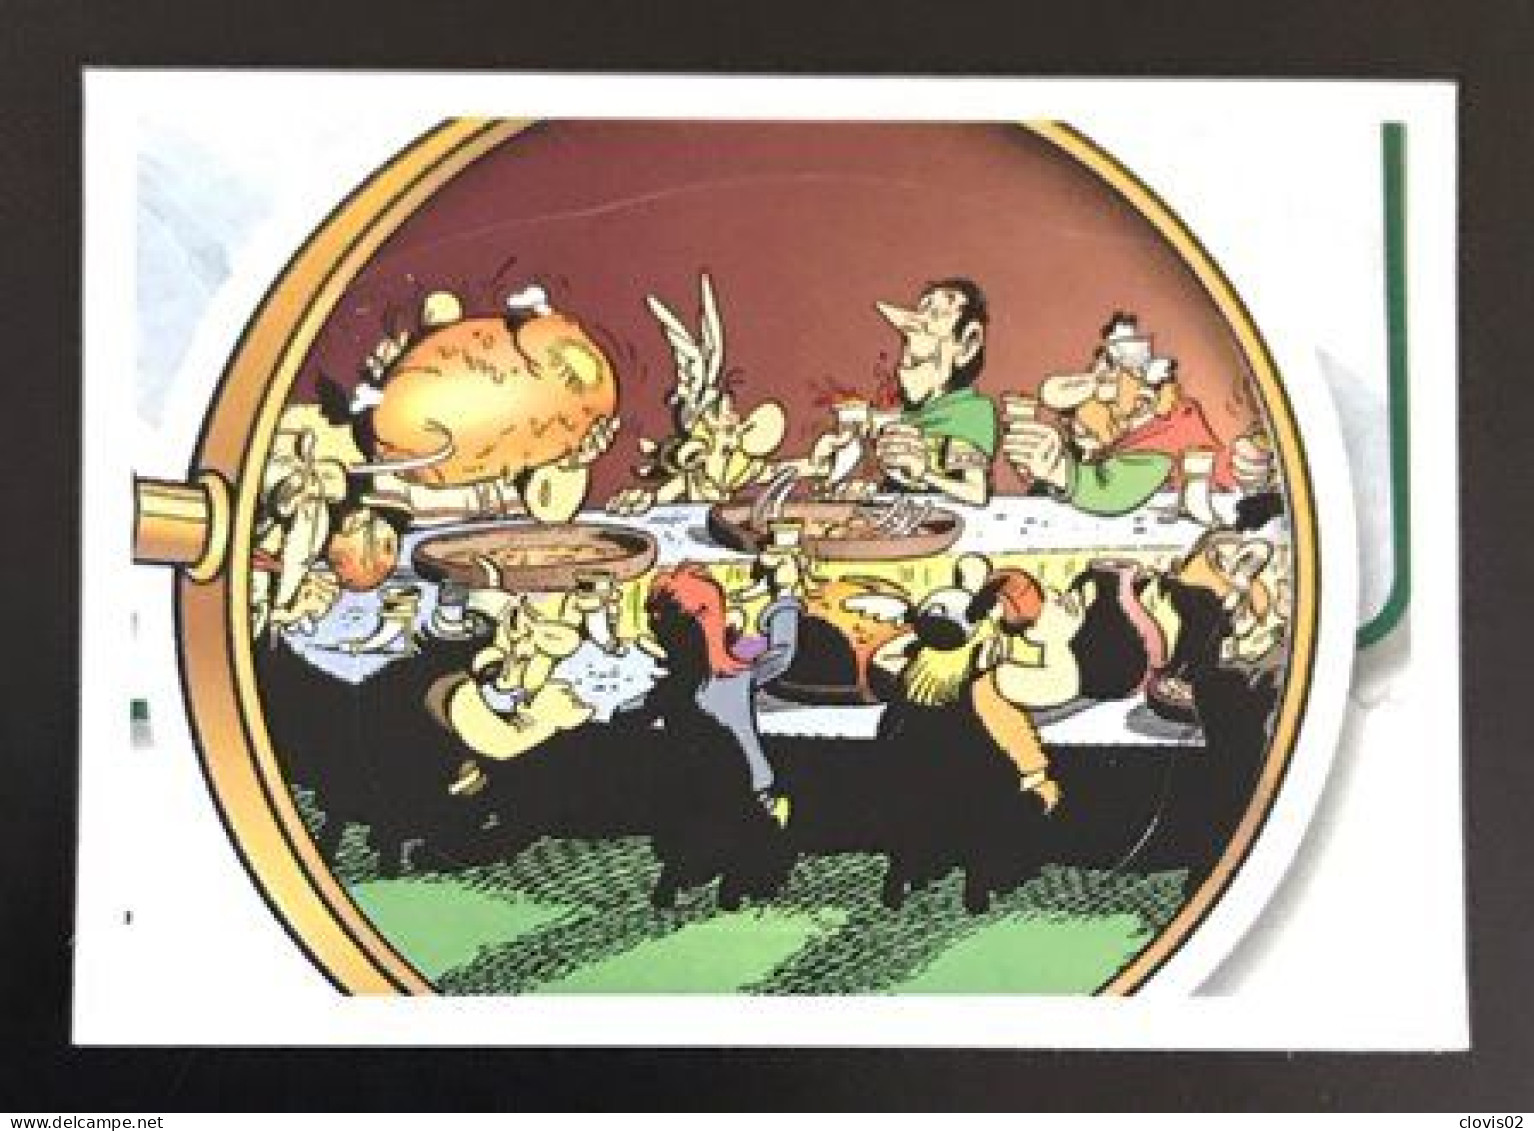 73 - PANINI Family Astérix 60 Ans D'aventures - Carrefour Sticker Vignette - Franse Uitgave